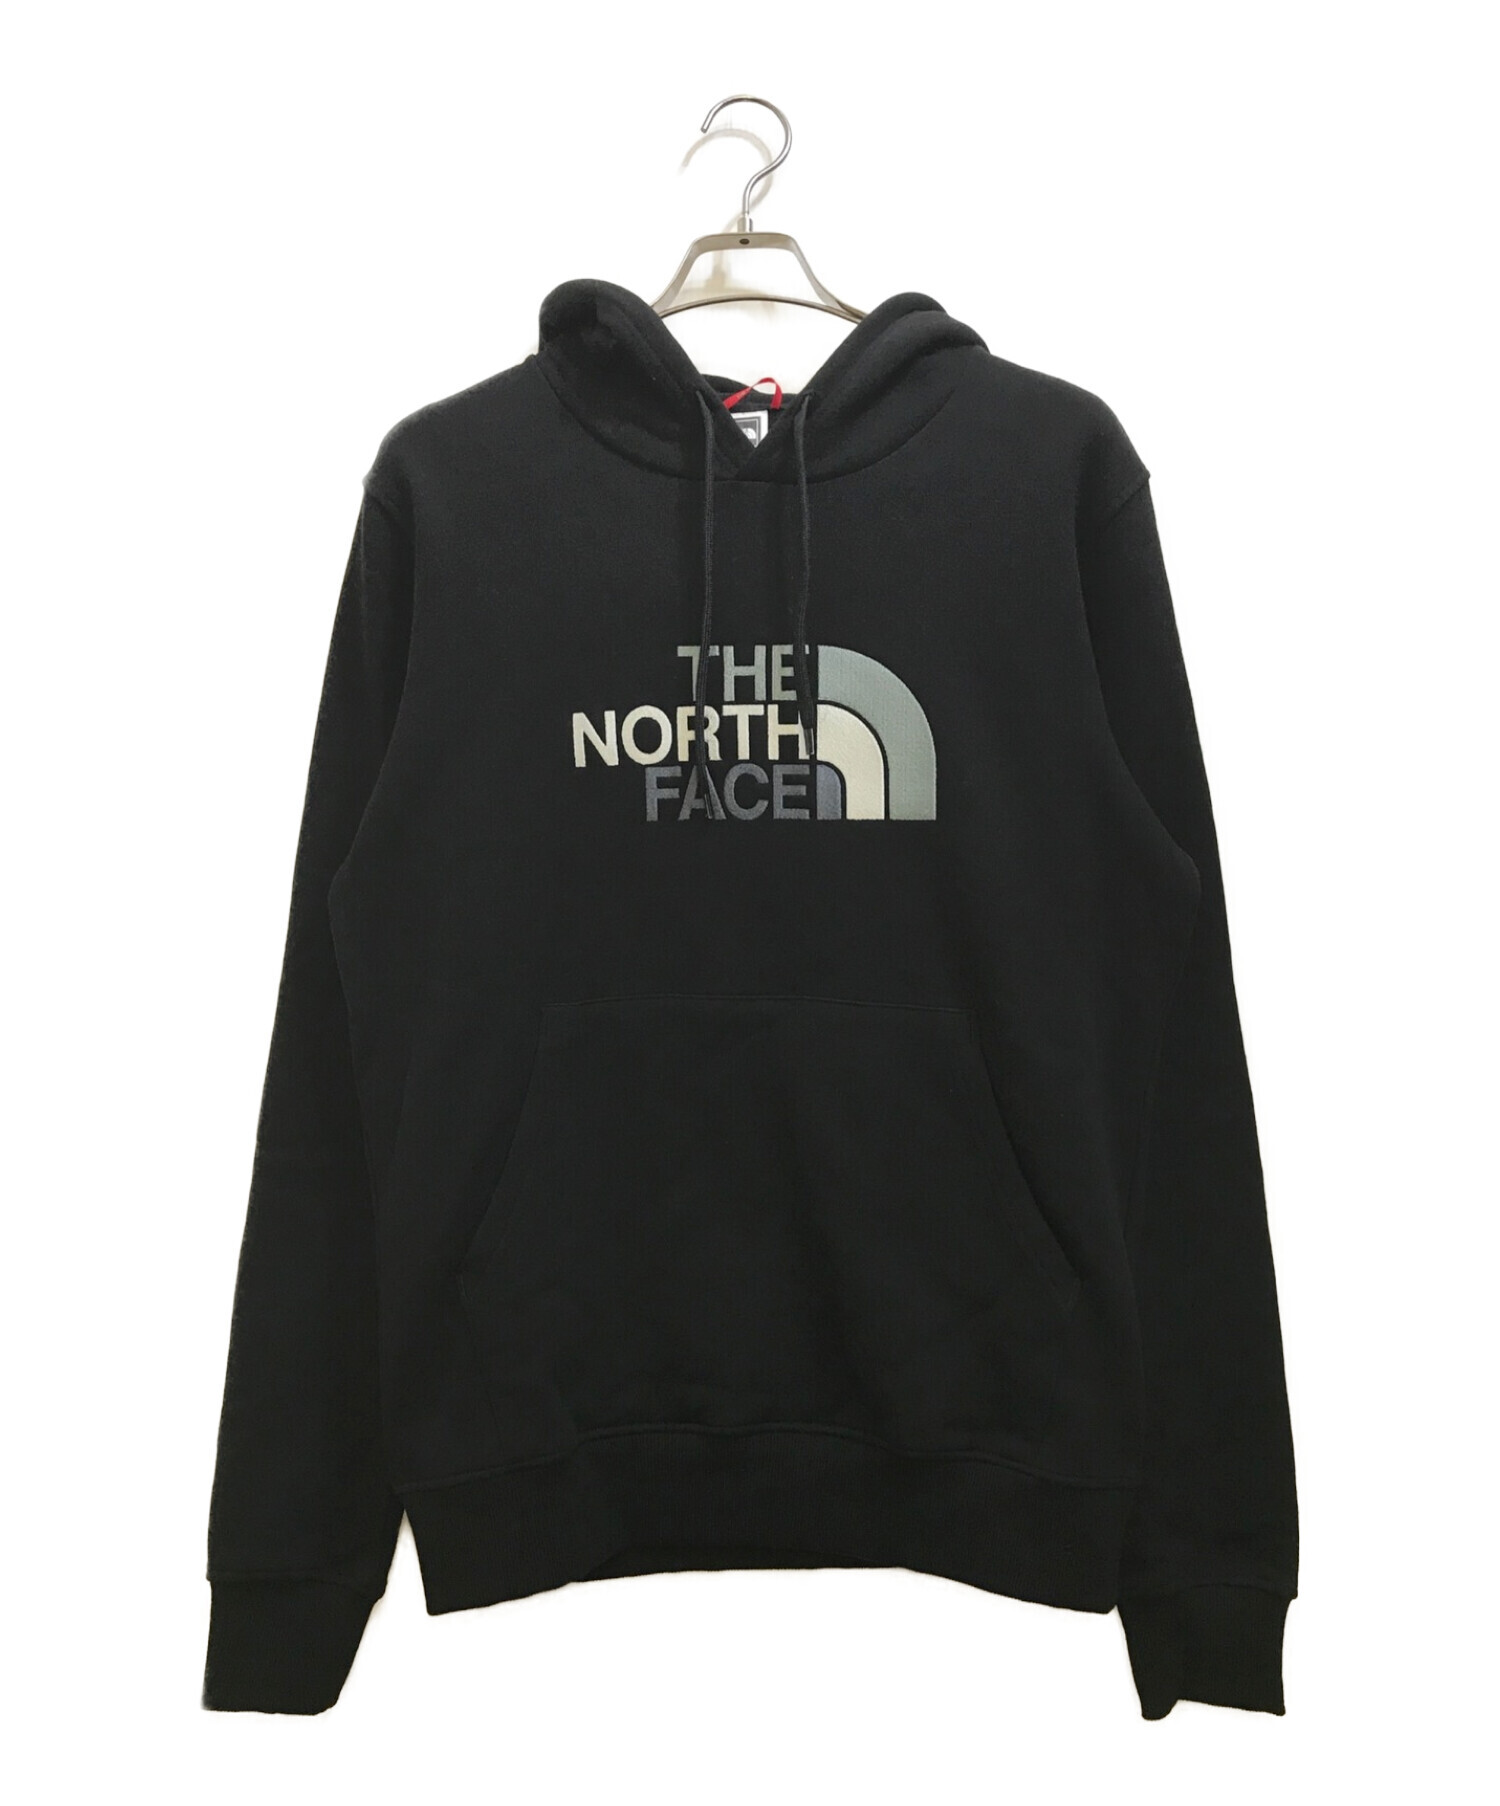 THE NORTH FACE (ザ ノース フェイス) ロゴ刺繍スウェットパーカー ブラック サイズ:Ｍ